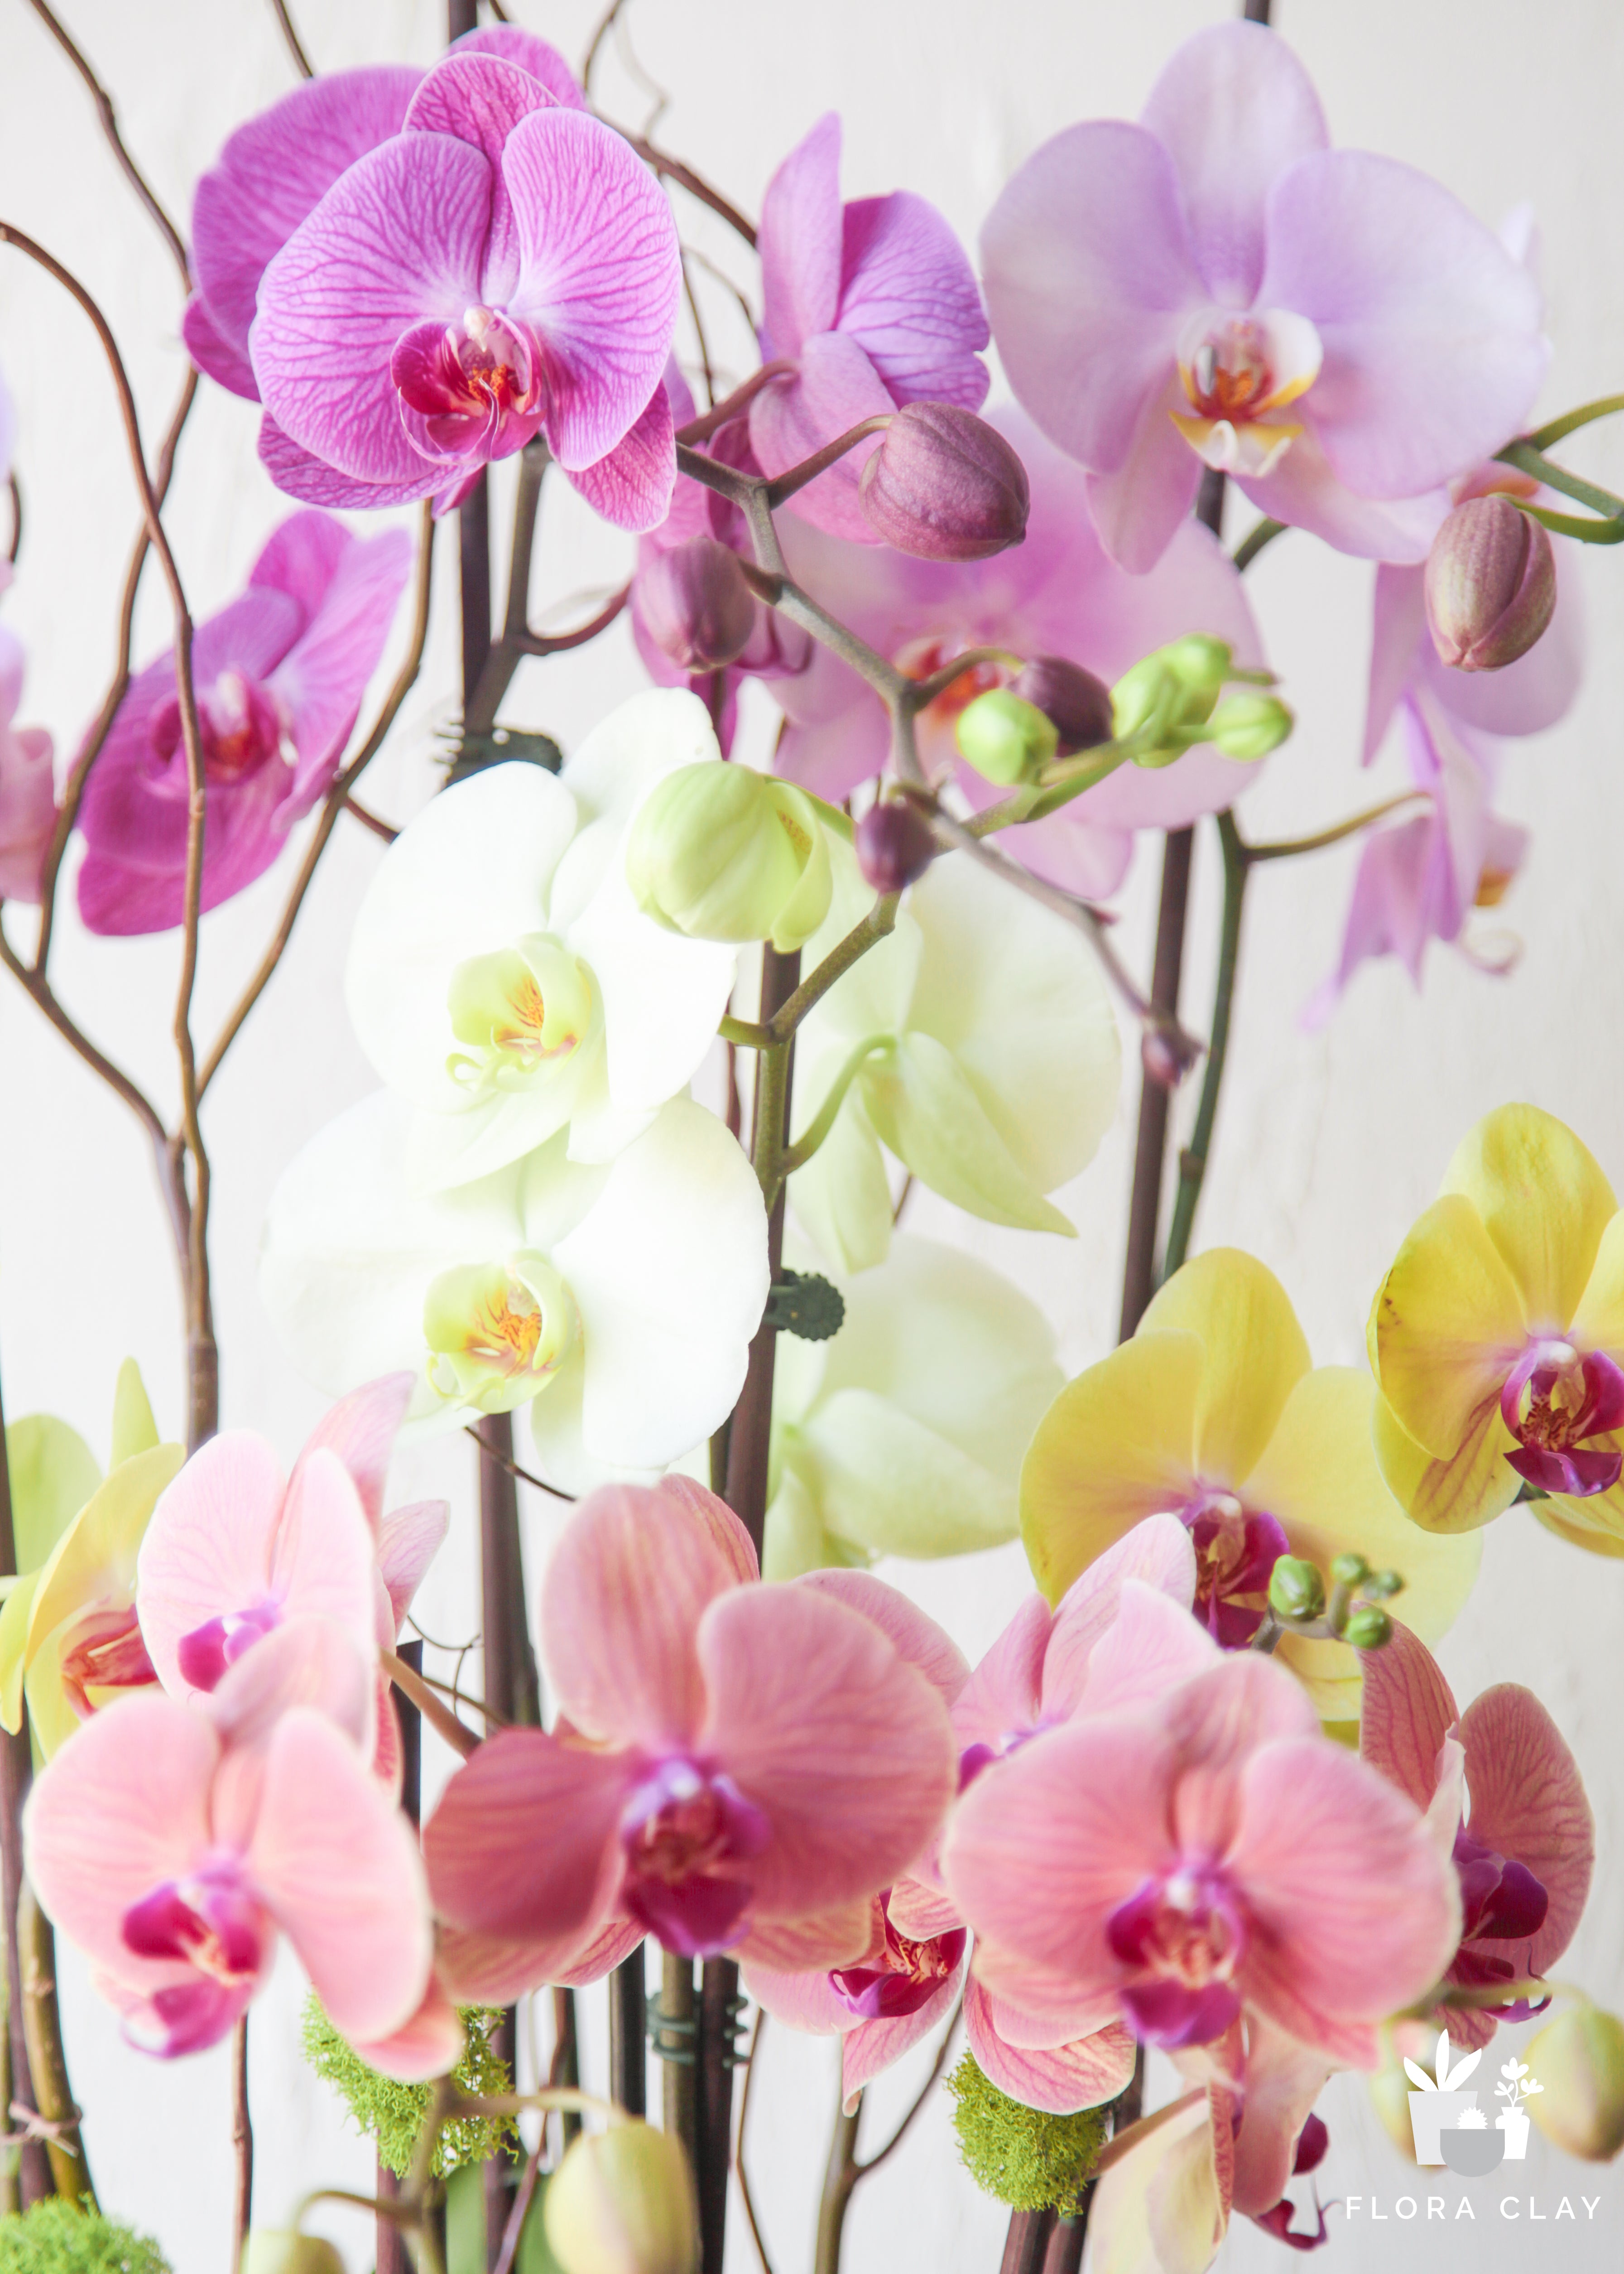 my-world-orchid-arrangement-floraclay-5_3b0e7d76-03fc-4f07-b47d-d29d75872096.jpg